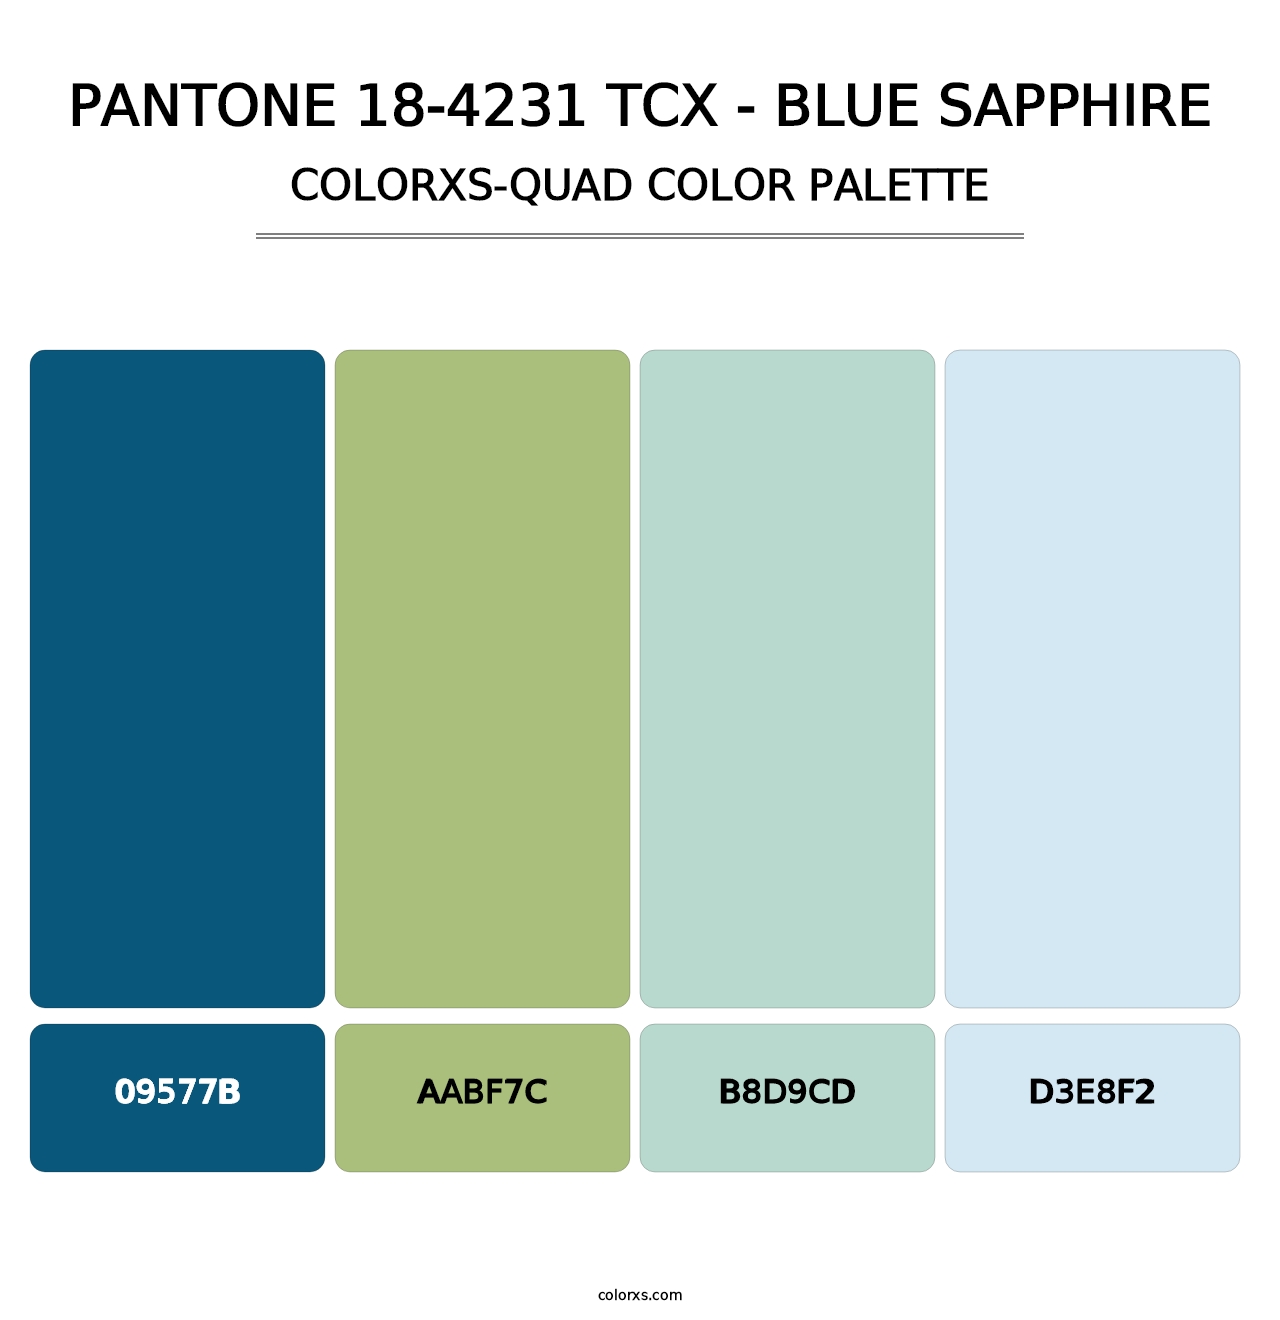 PANTONE 18-4231 TCX - Blue Sapphire - Colorxs Quad Palette